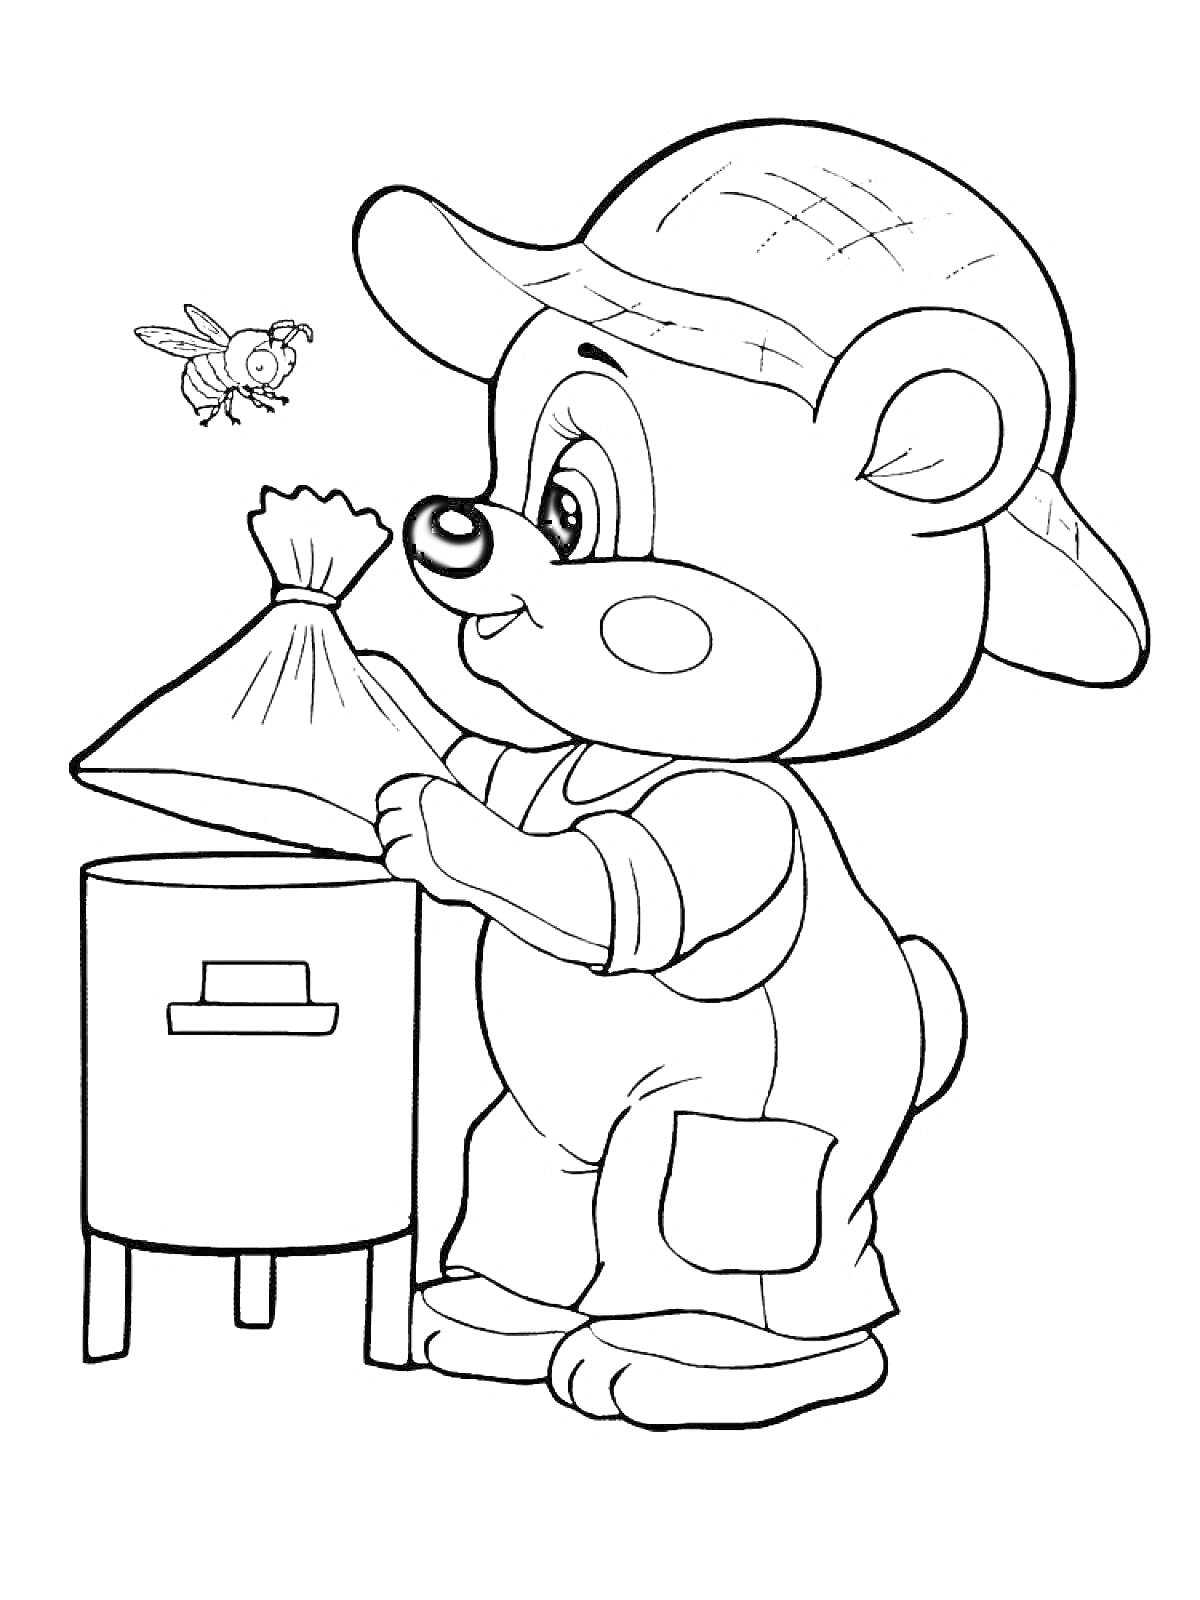 Раскраска Медвежонок в шляпе, собирающий мед на пасеке (медвежонок с мешочком, улей и пчела)